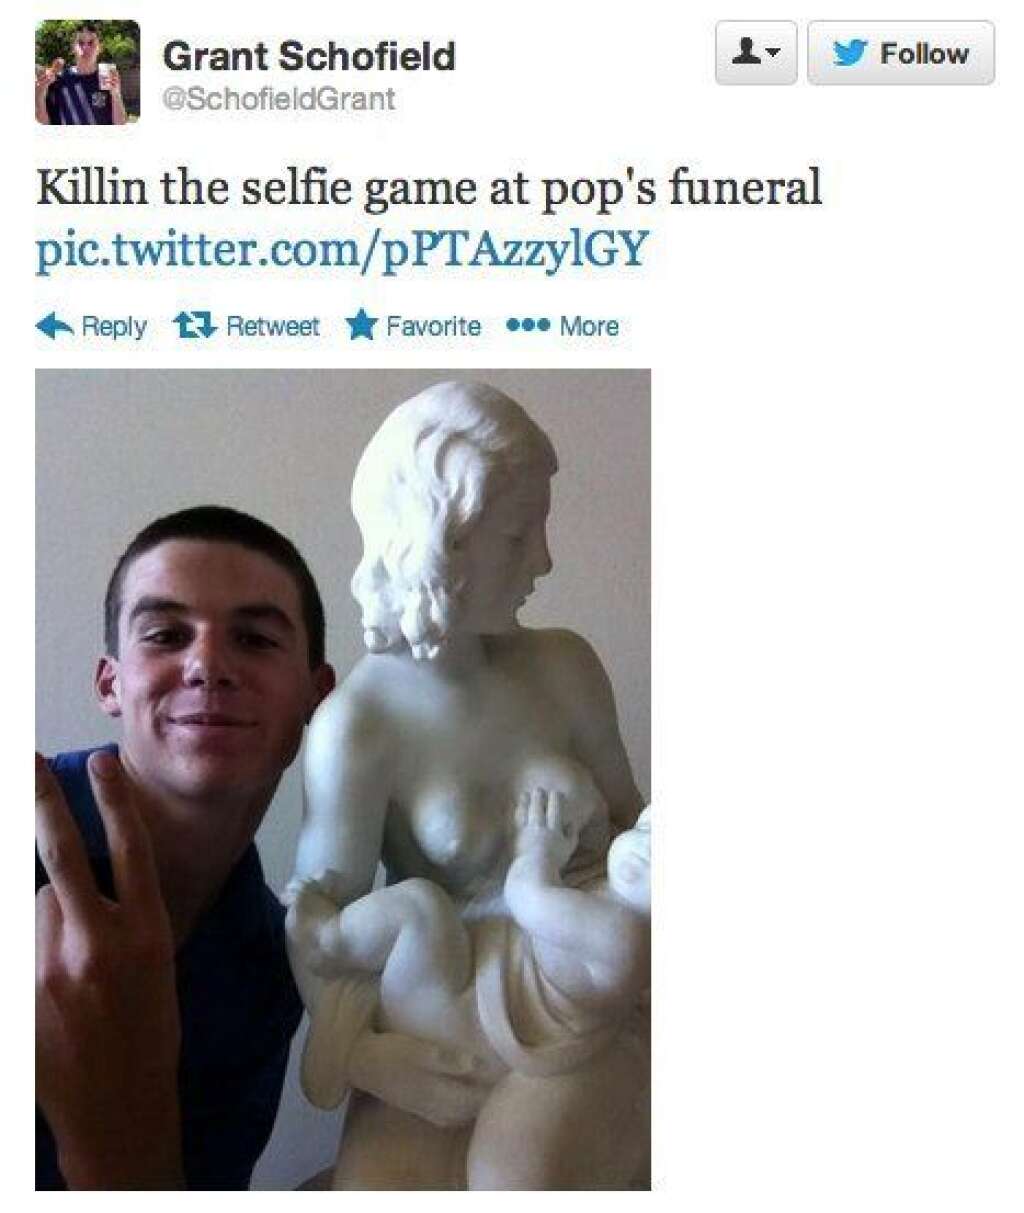 Selfies at Funerals - "Un petit selfie à l'enterrement de Papy"